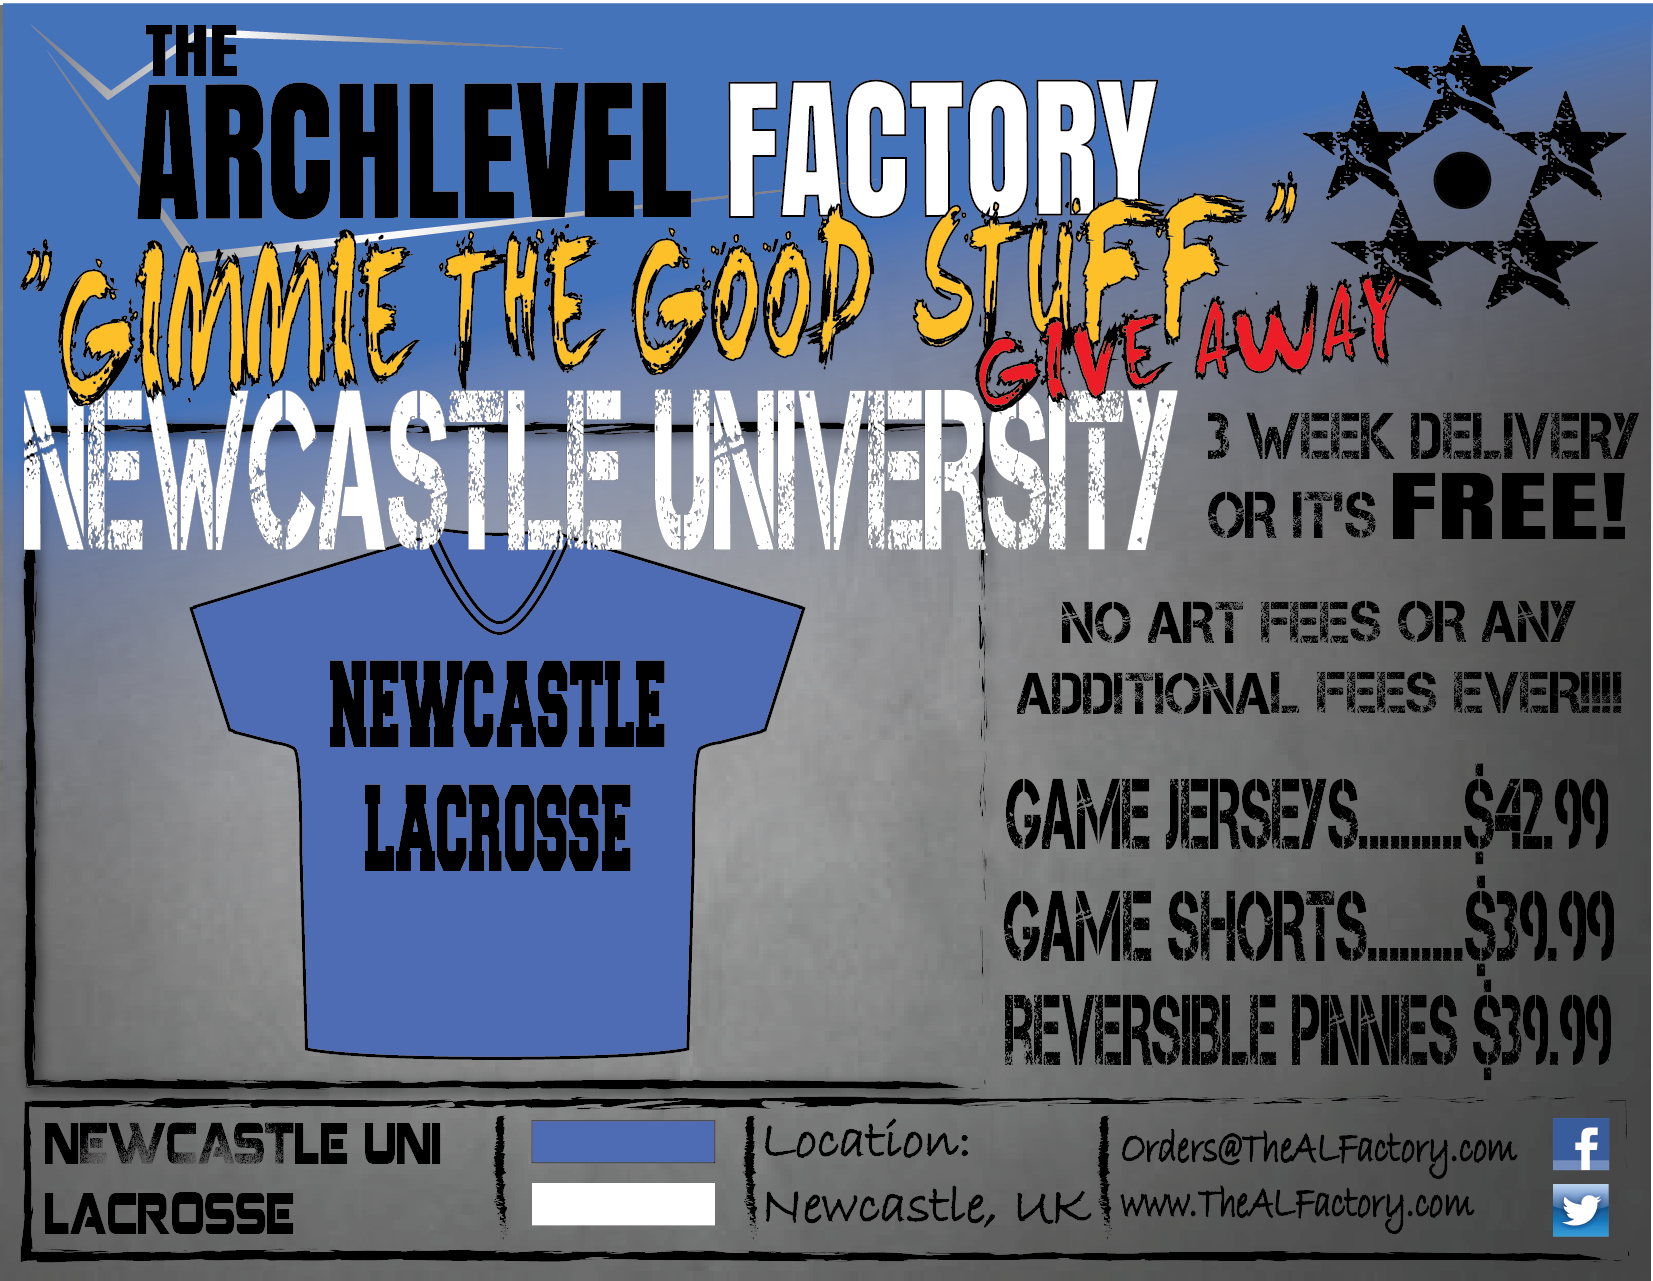 Newcastle Uni